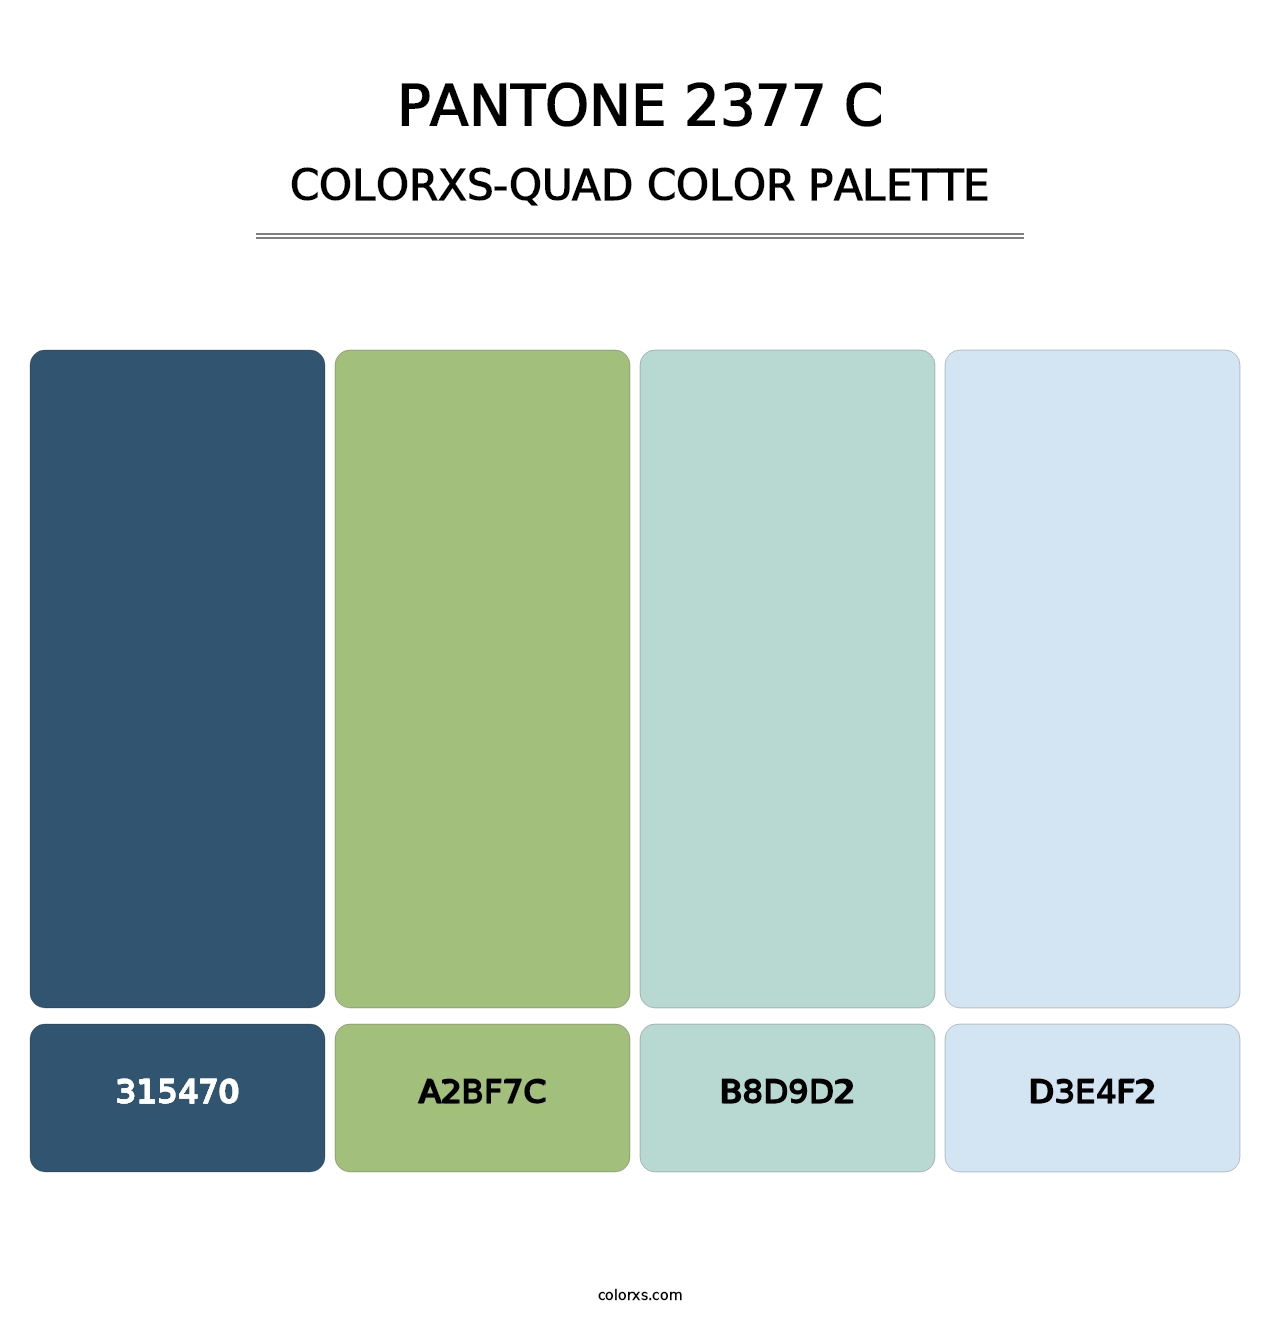 PANTONE 2377 C - Colorxs Quad Palette